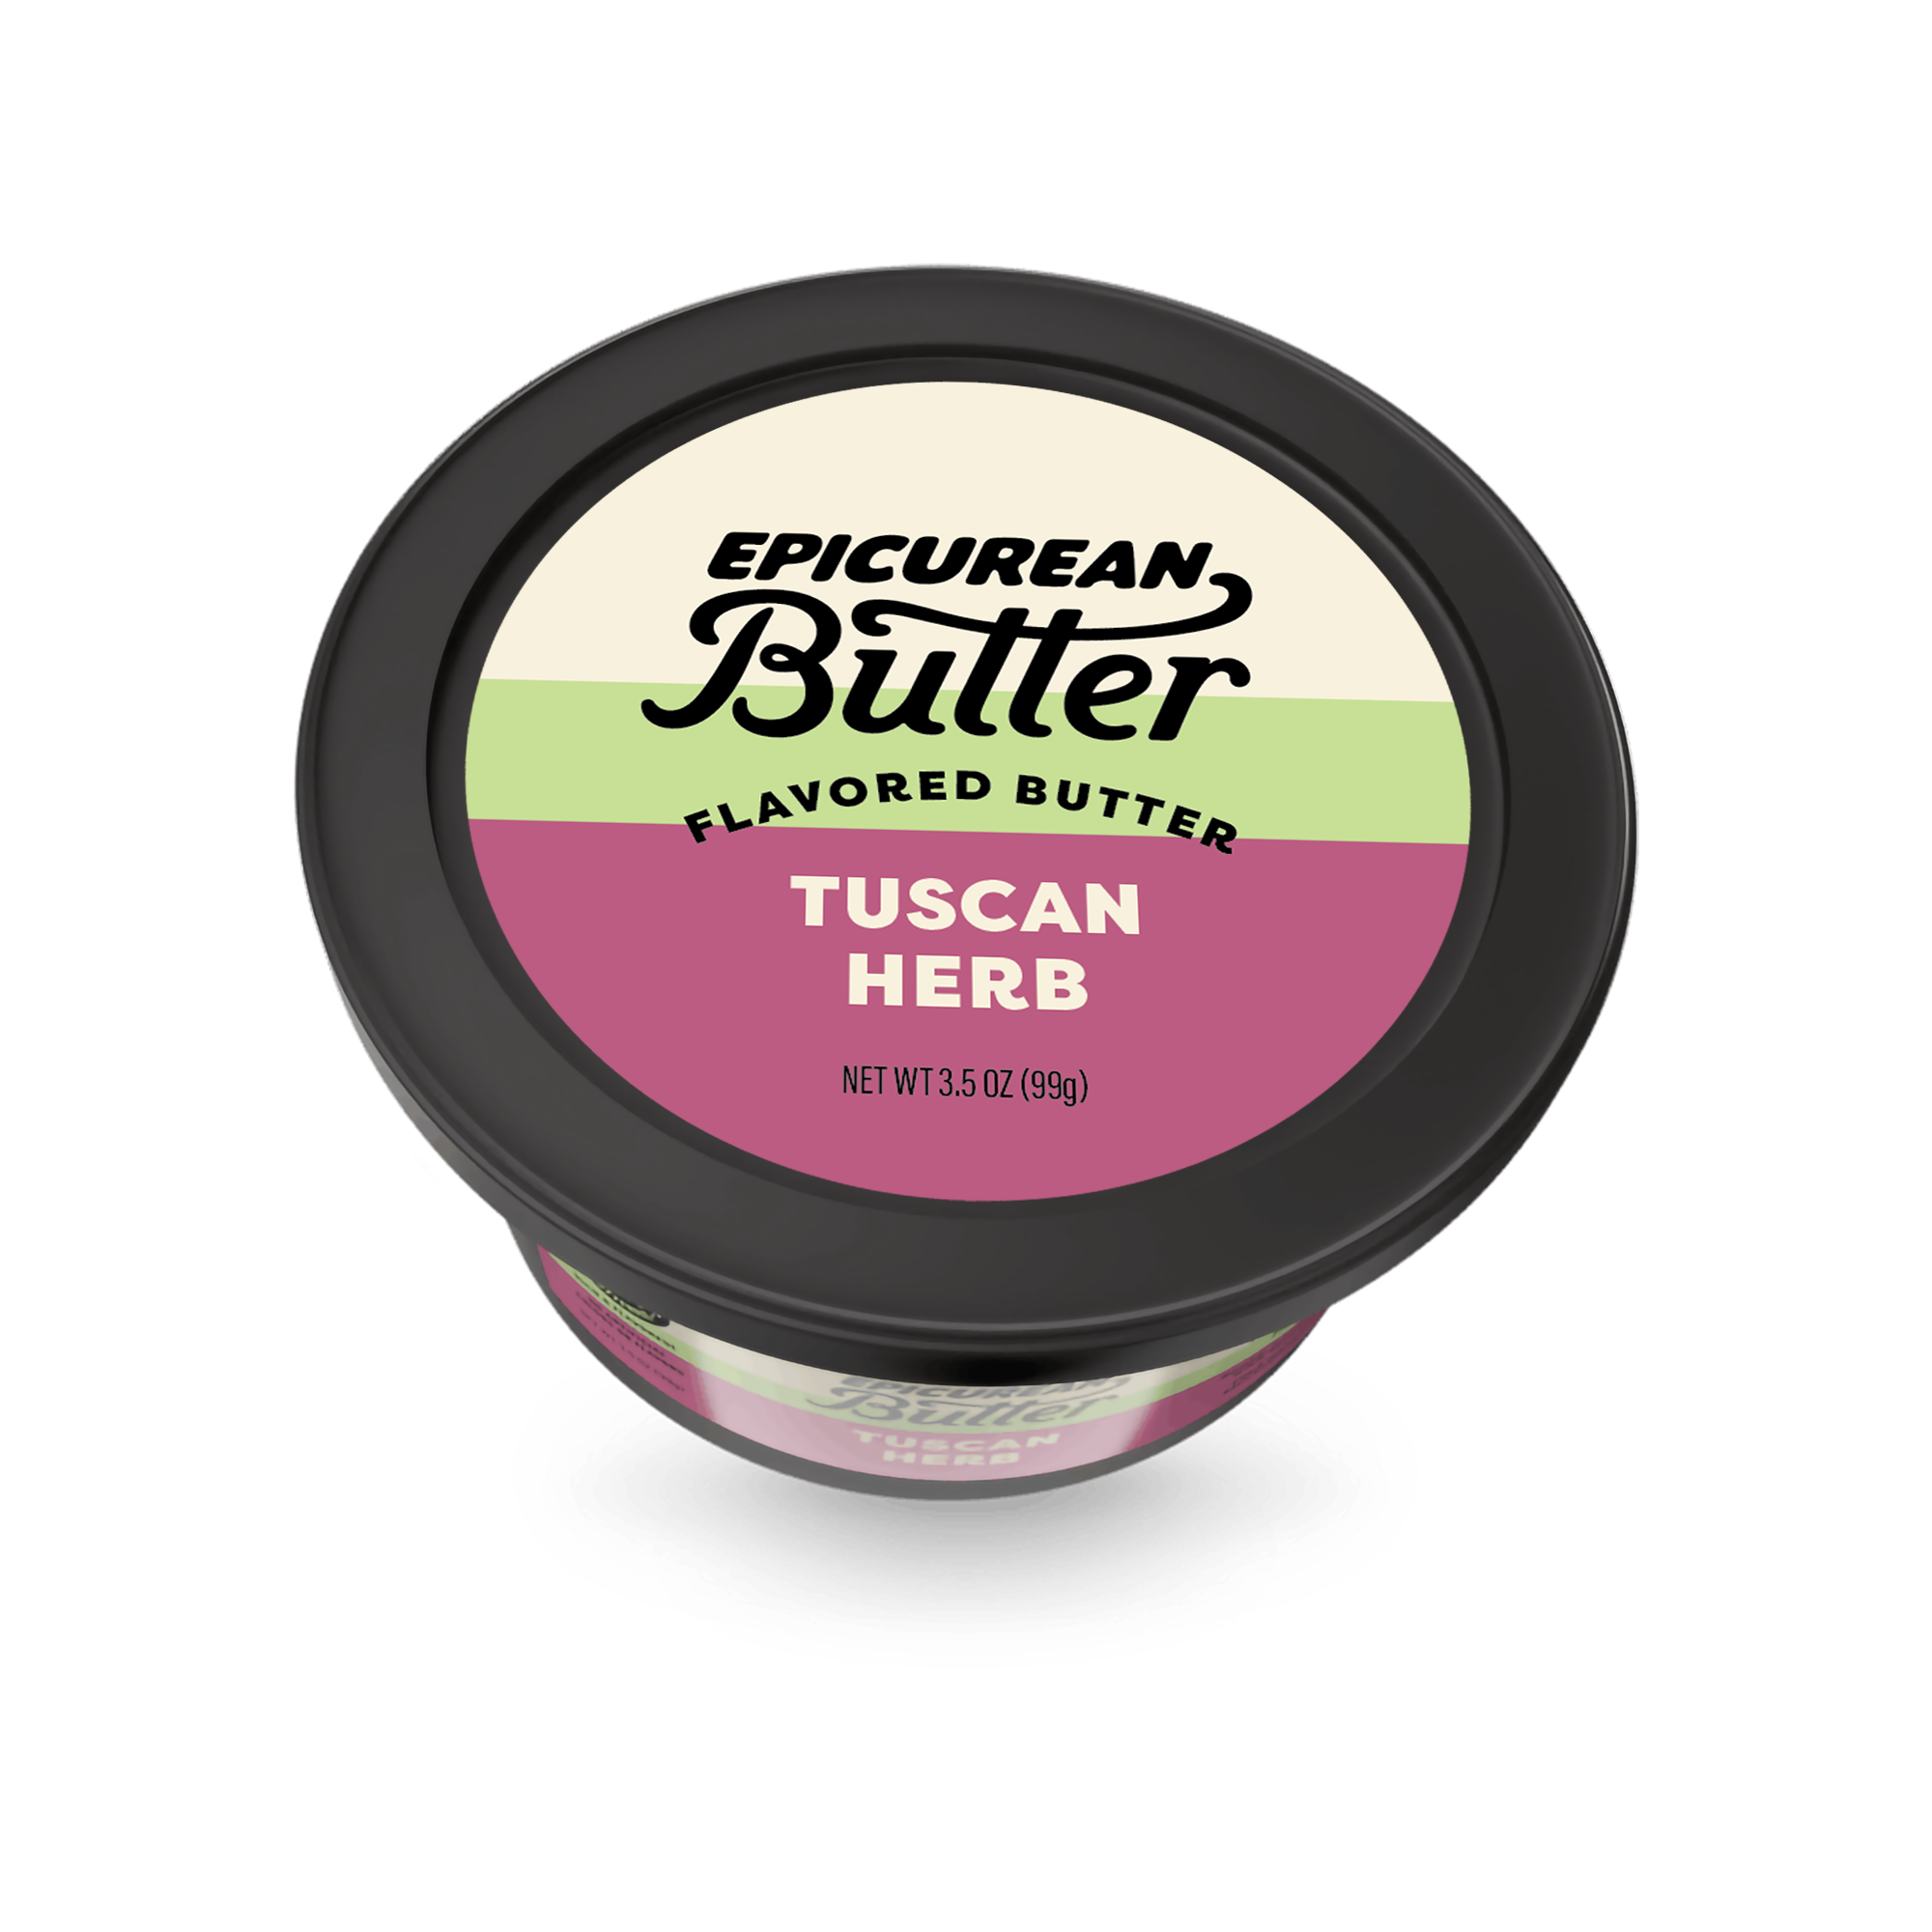 Tuscan Herb tub side